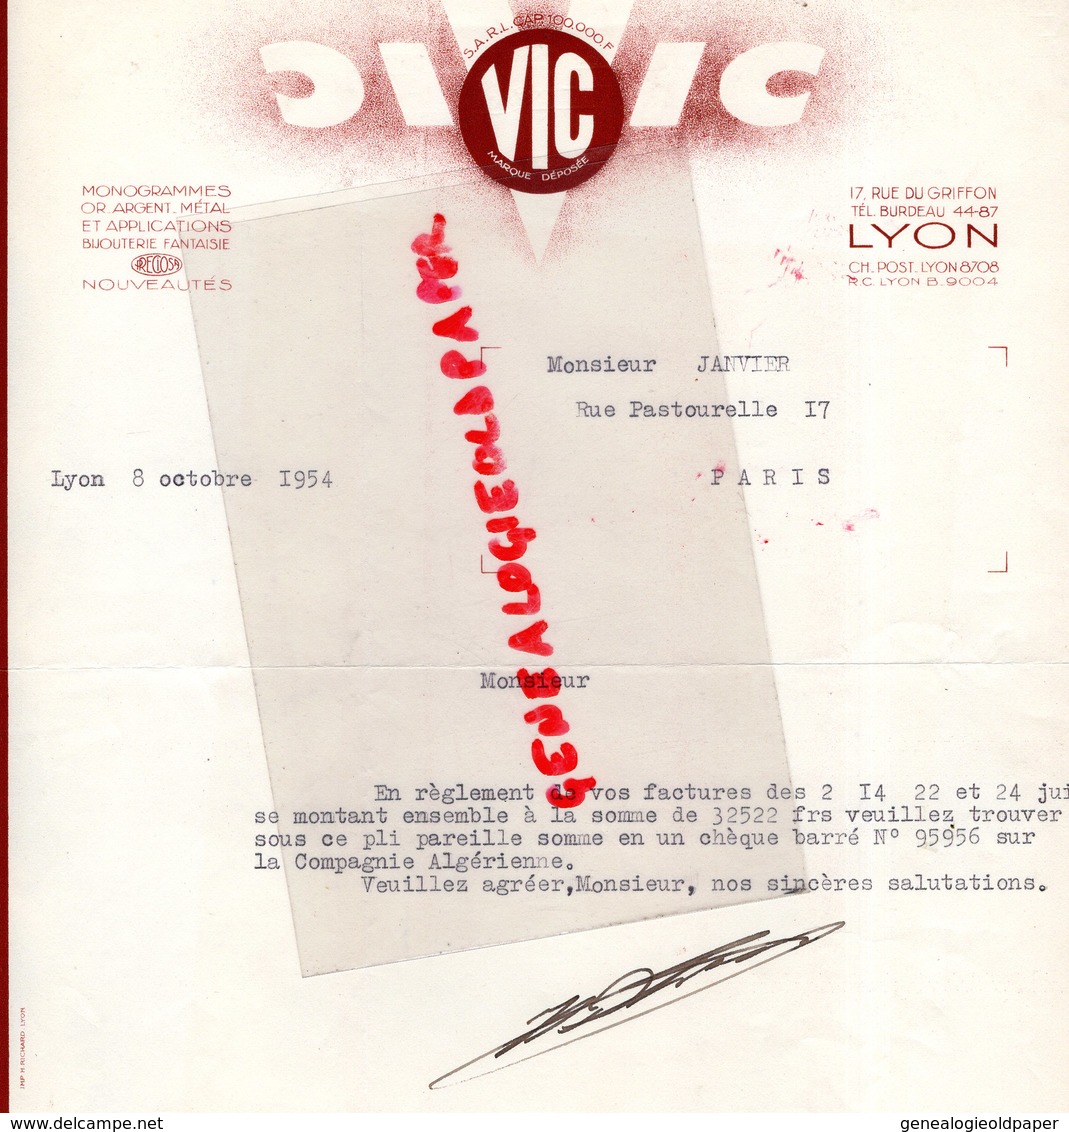 69- LYON- RARE LETTRE VIC -MONOGRAMME - BIJOUTIER-MONOGRAMMES OR- ARGENT METAL-BIJOUTERIE FANTAISIE-1954 - Petits Métiers